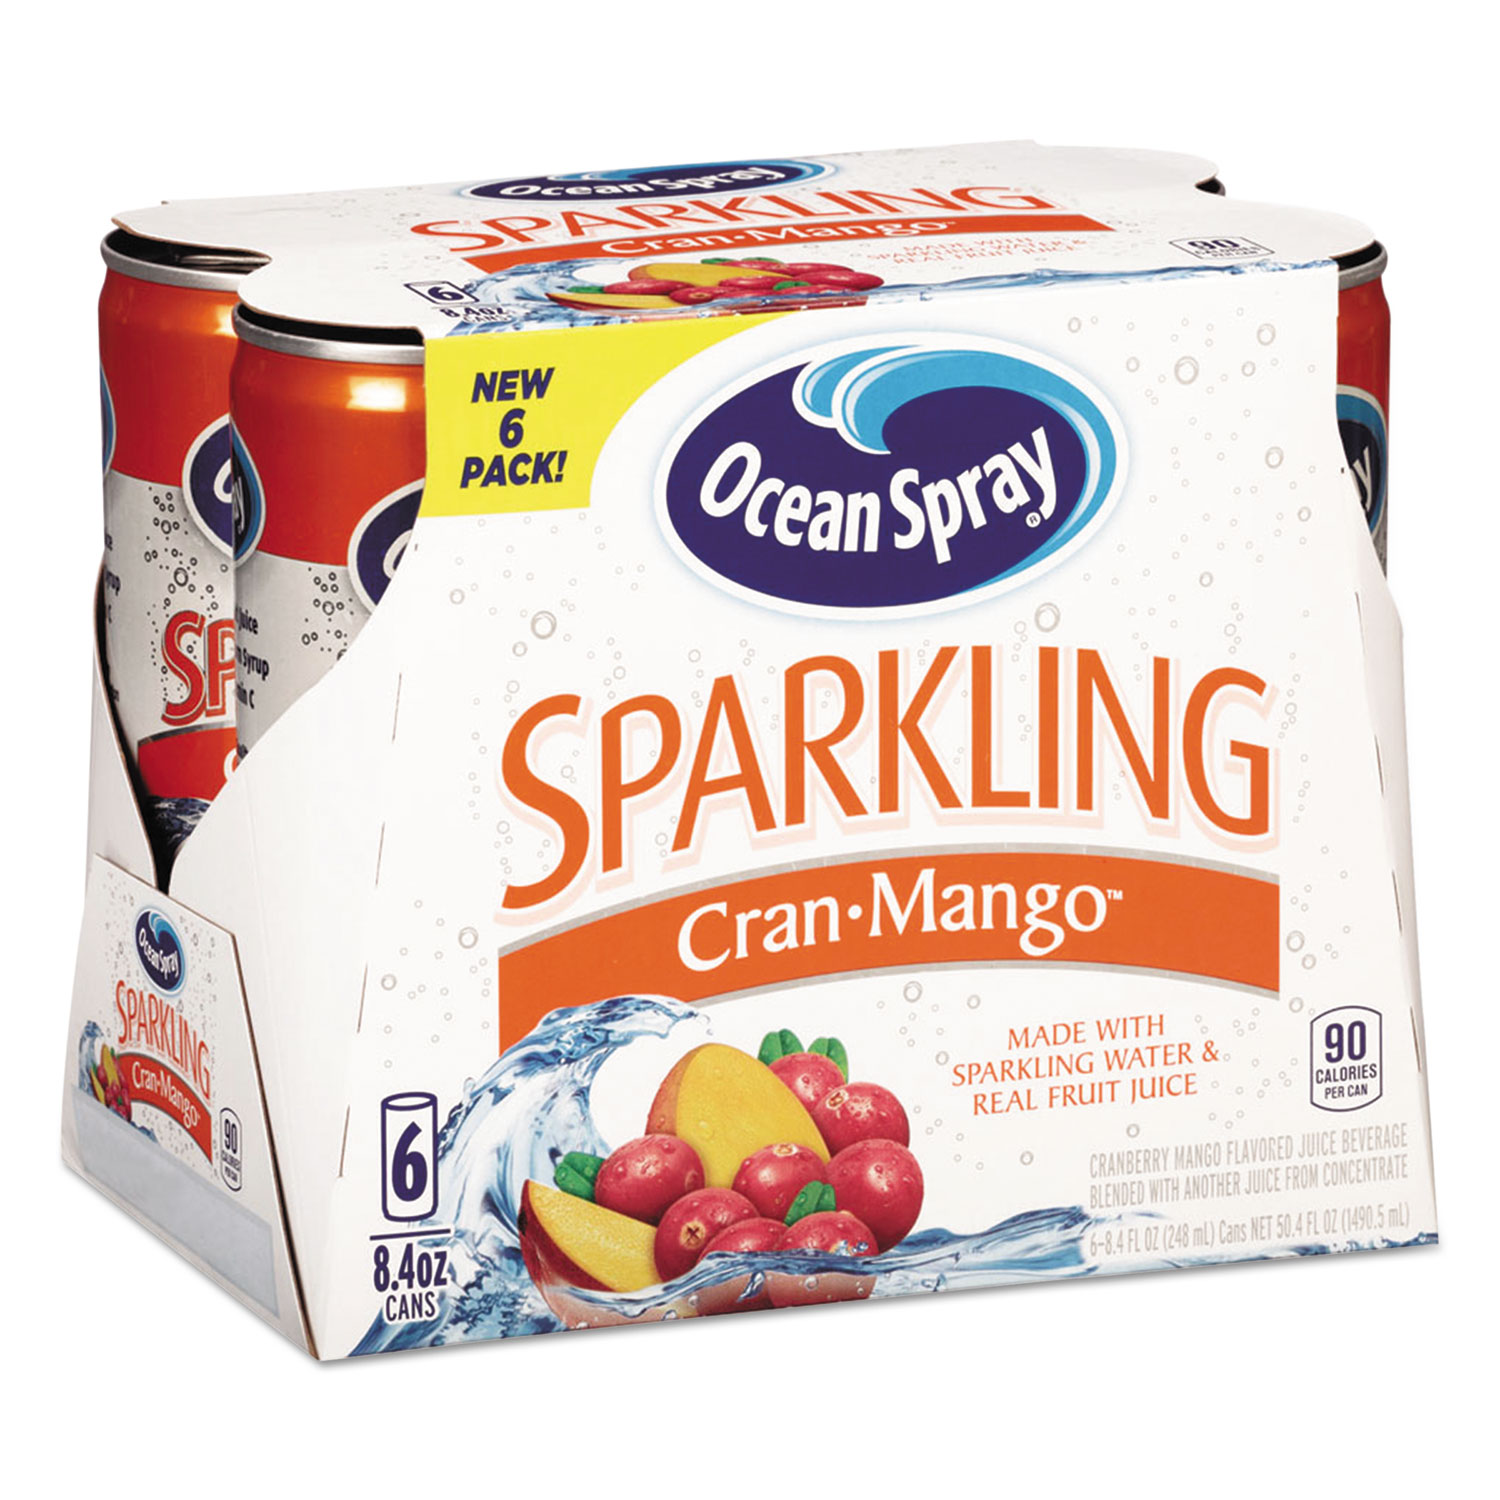 Sparkling Juices, CranMango, 8.4 oz Can, 6/Pack